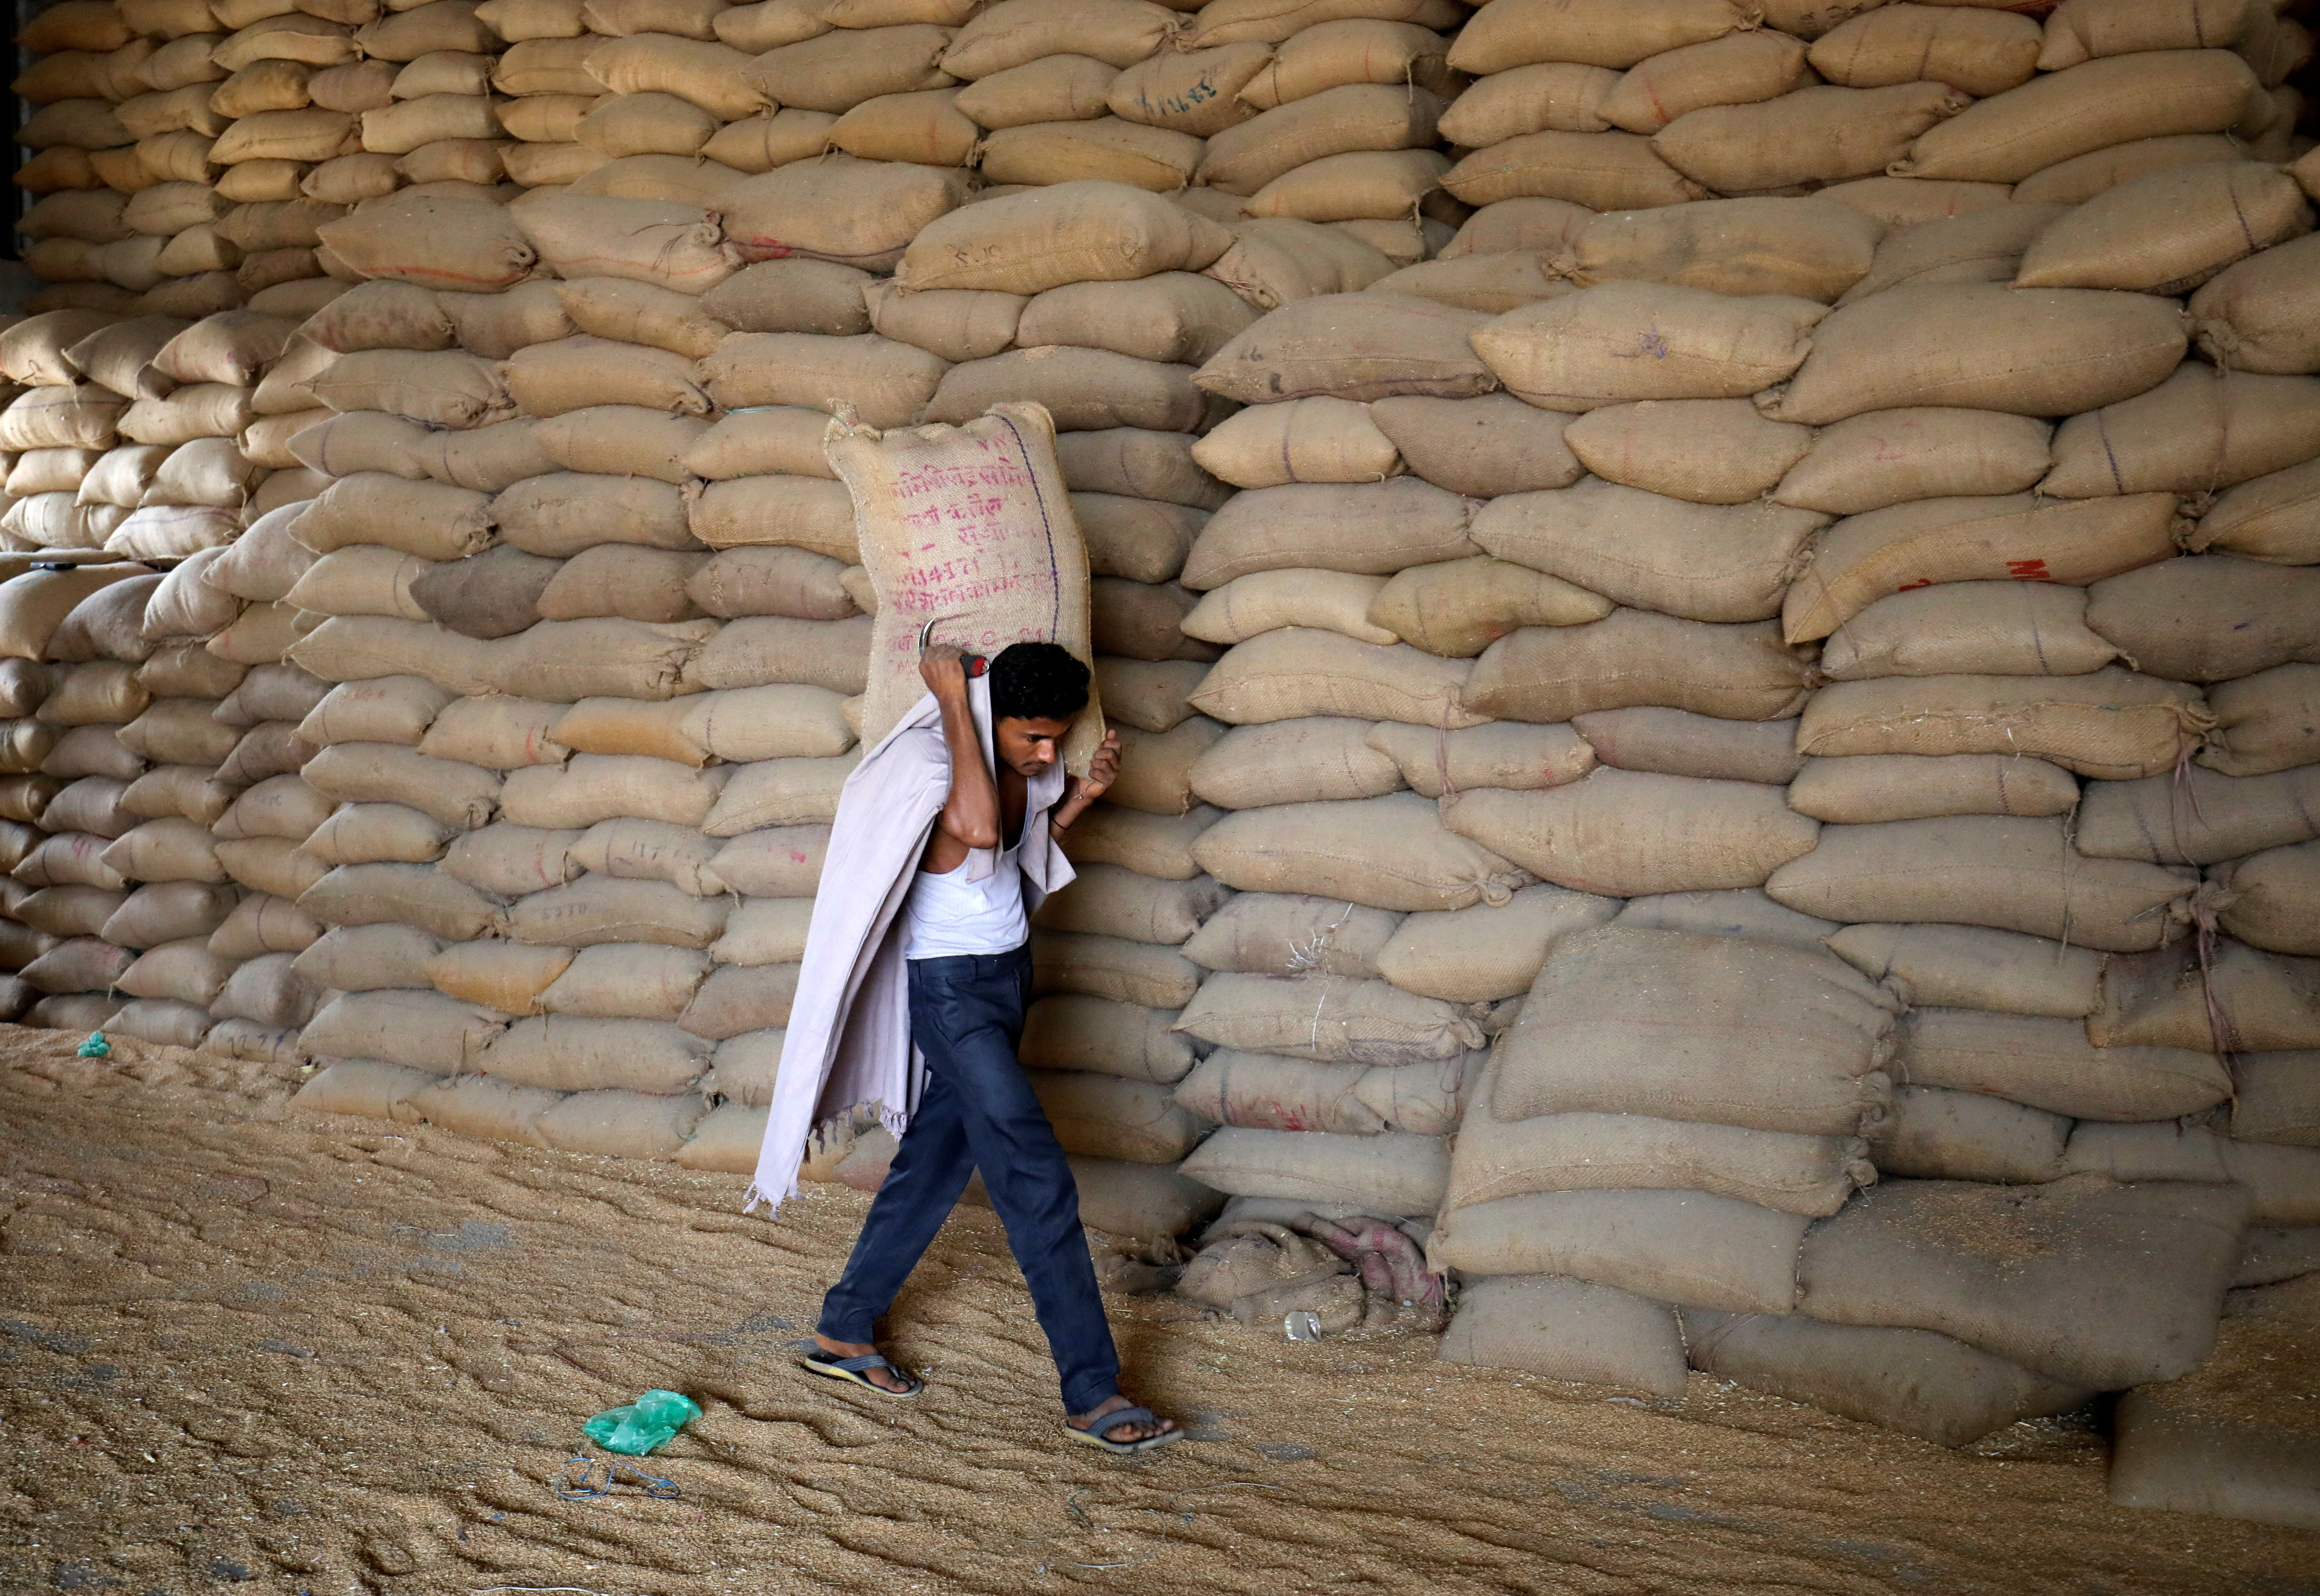 Un trabajador carga un saco de trigo para tamizarlo en un molino de granos en las afueras de Ahmedabad.